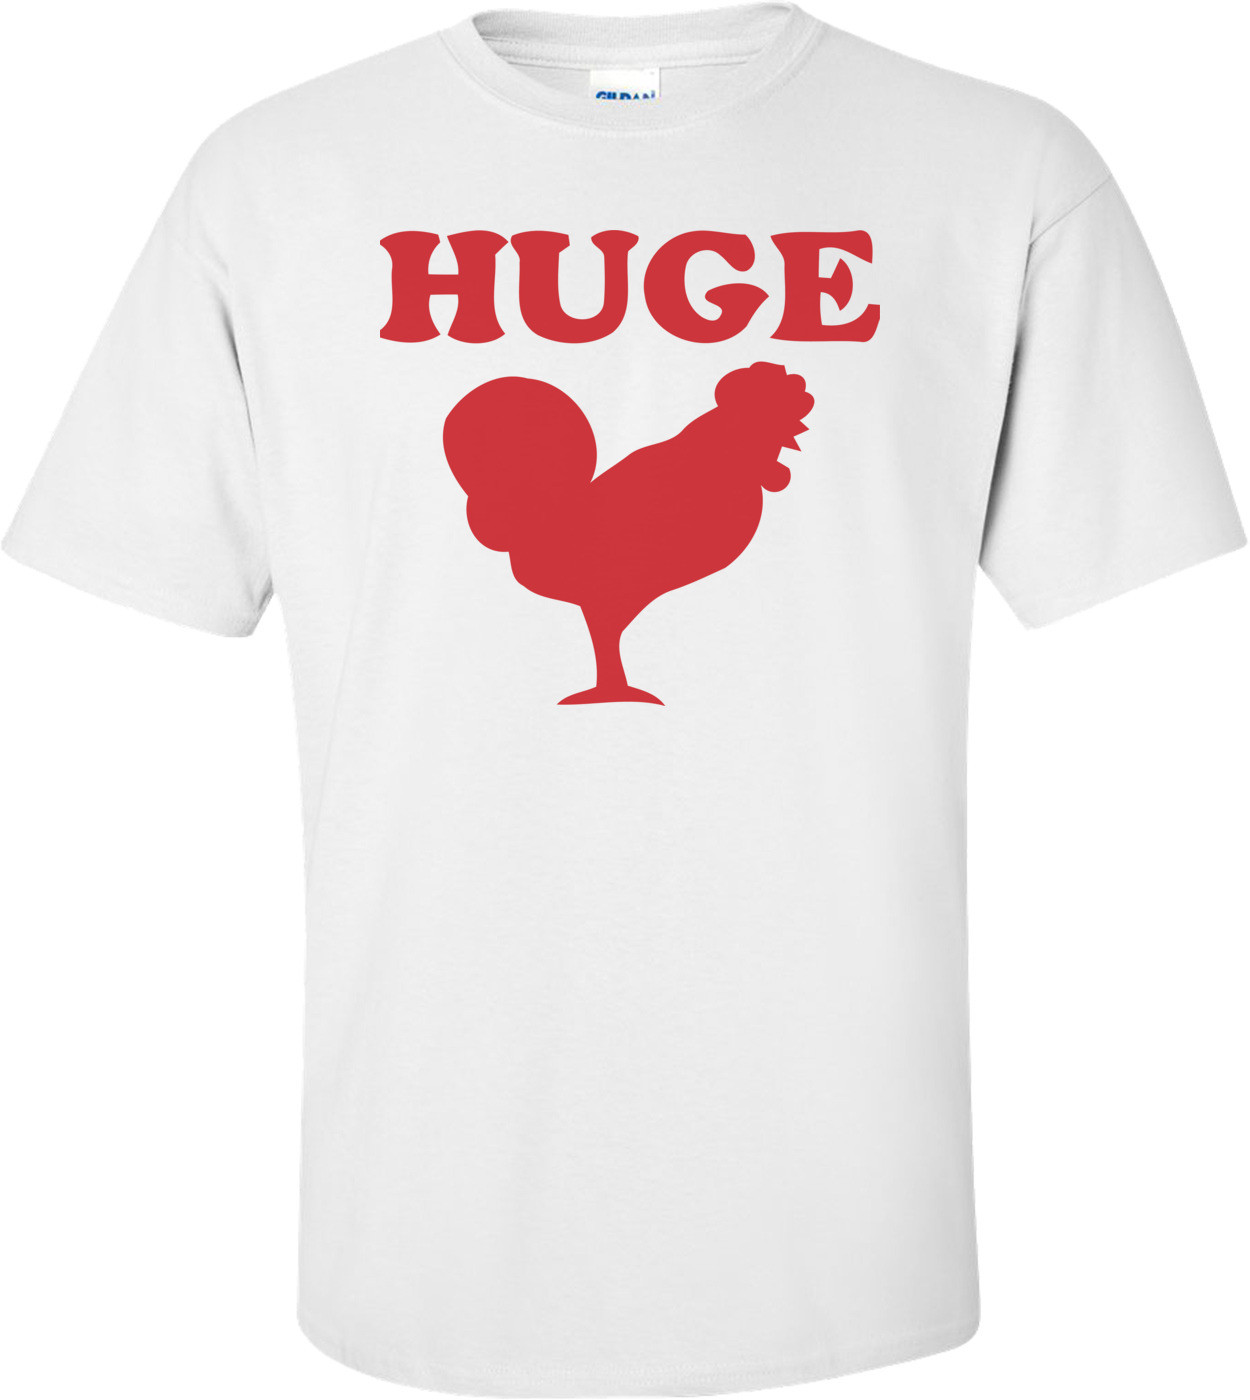 Huge Cock T-shirt 